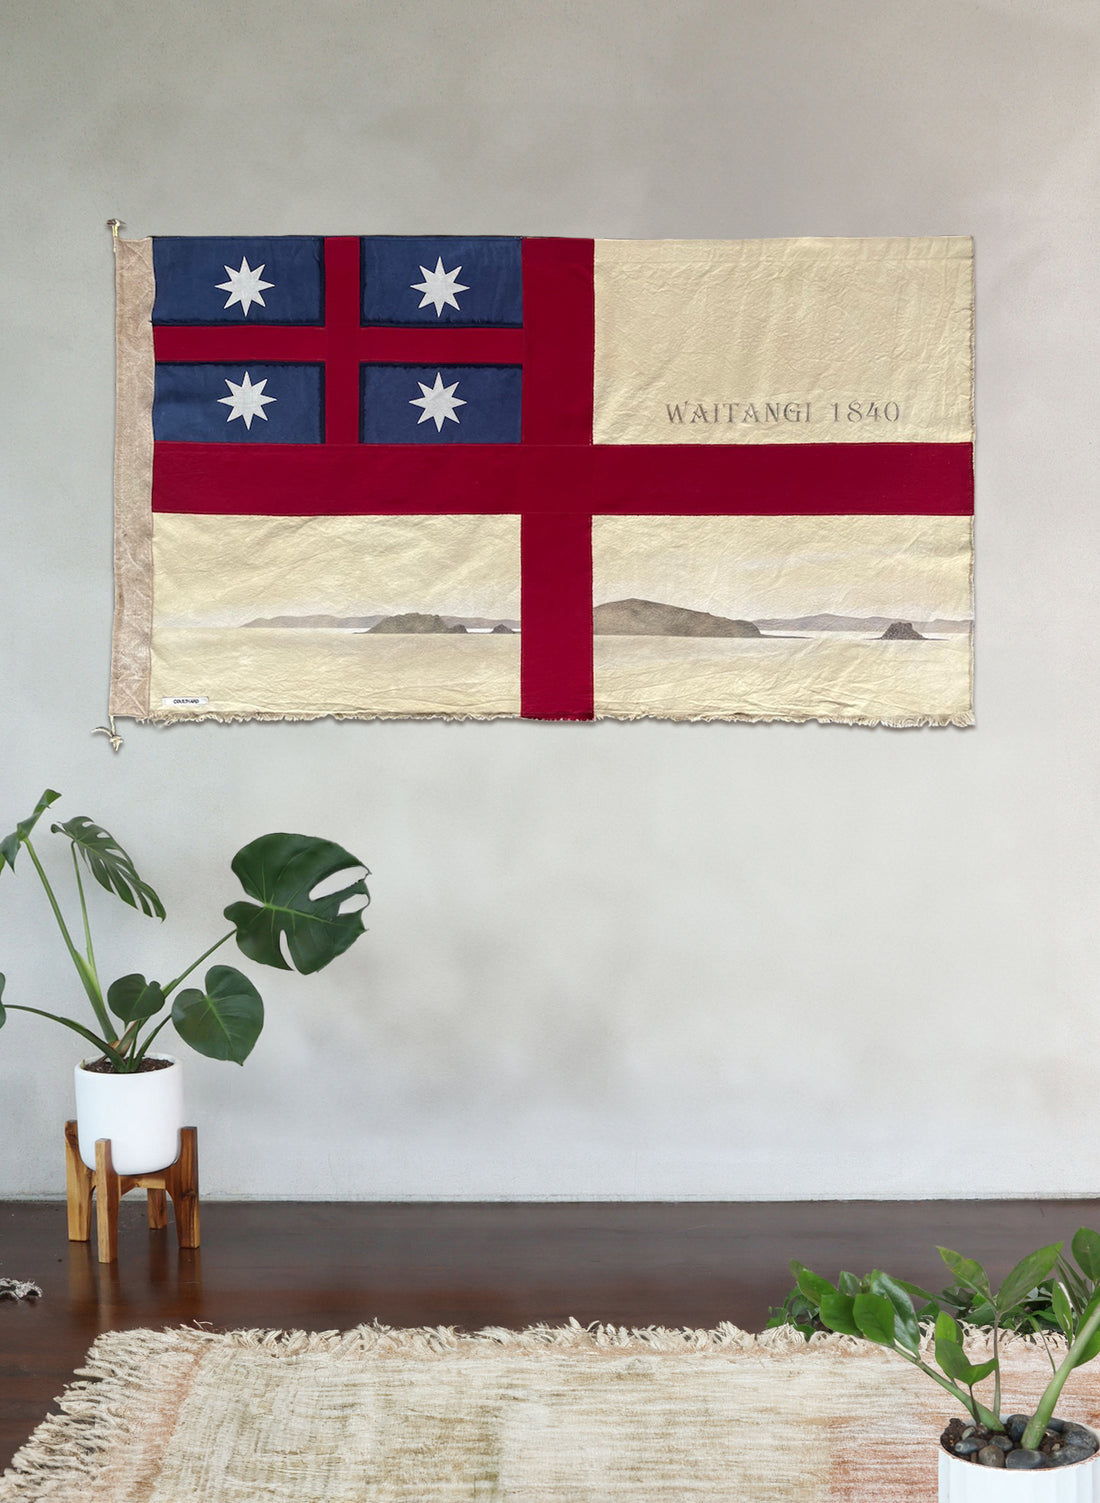 Paihia - Waitangi, 1840  - Horizontal Flag 